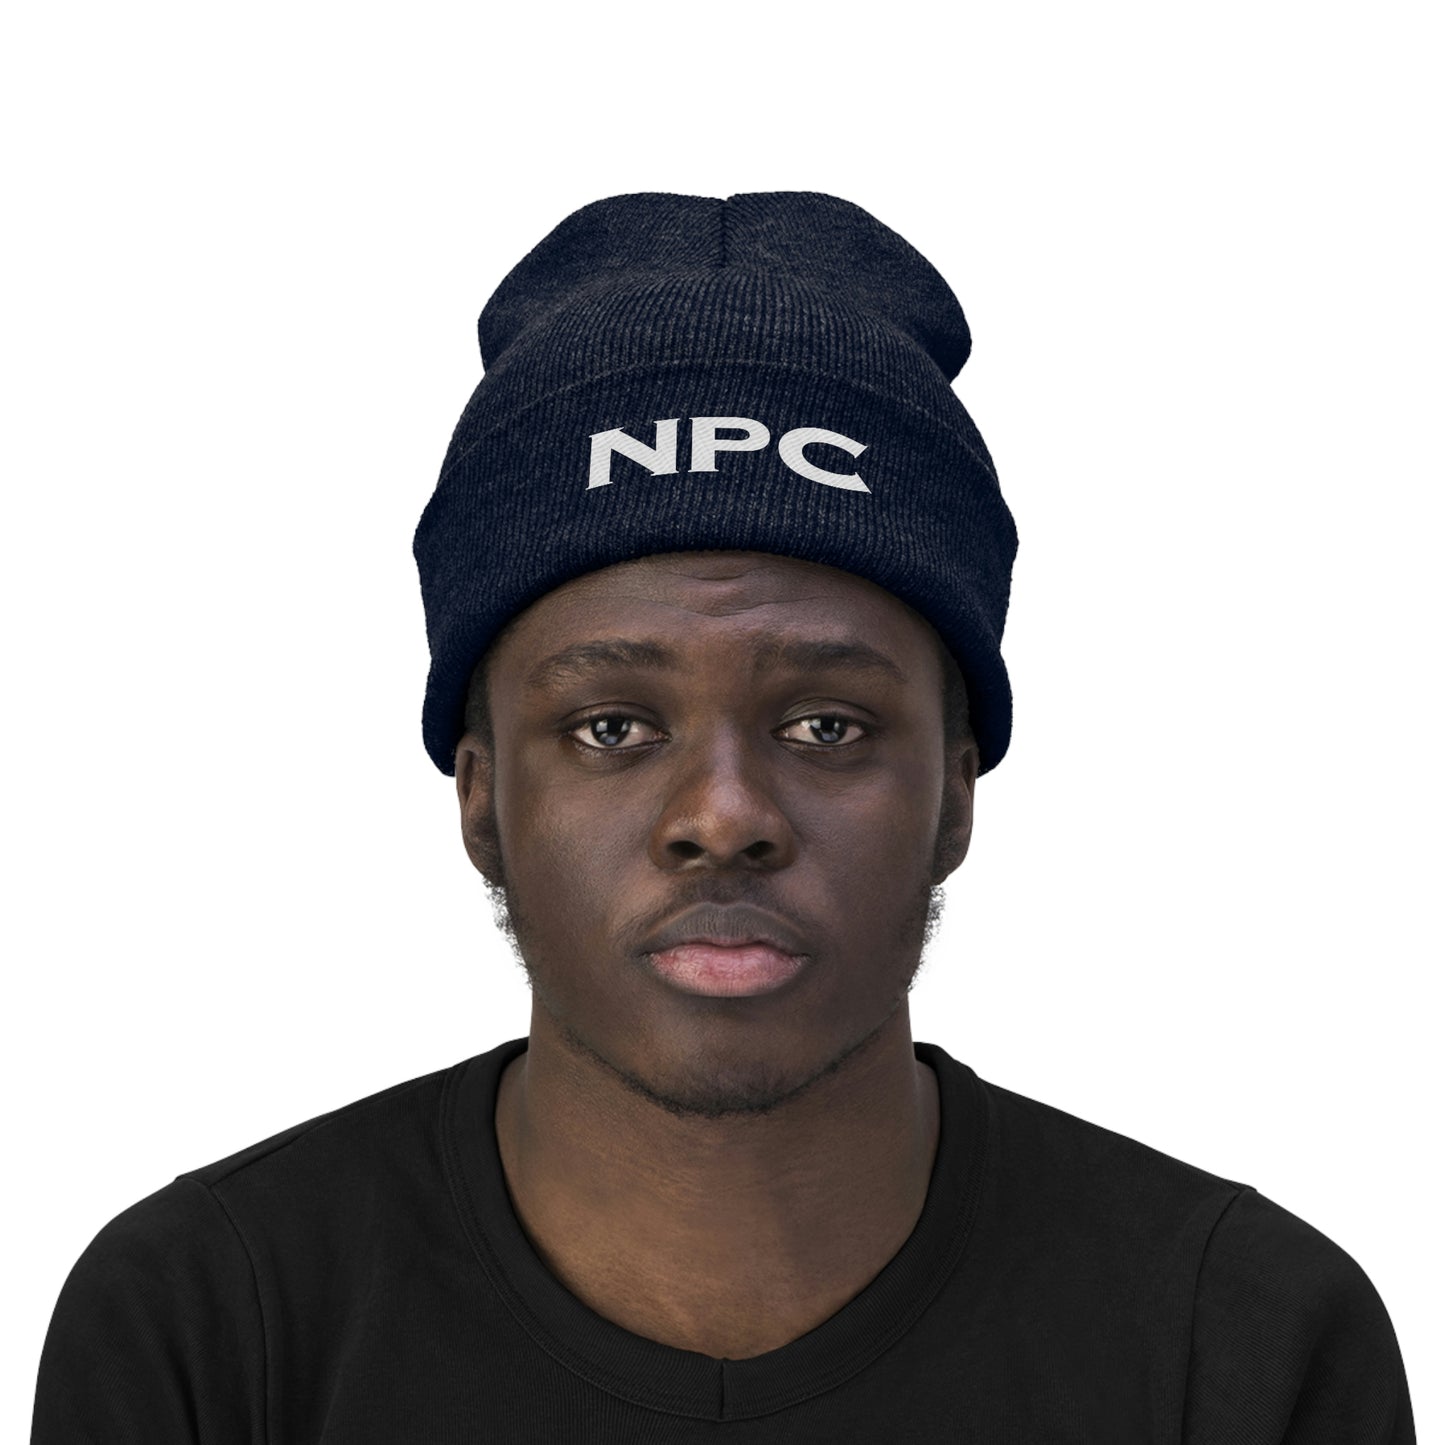 「NPC」ニット帽